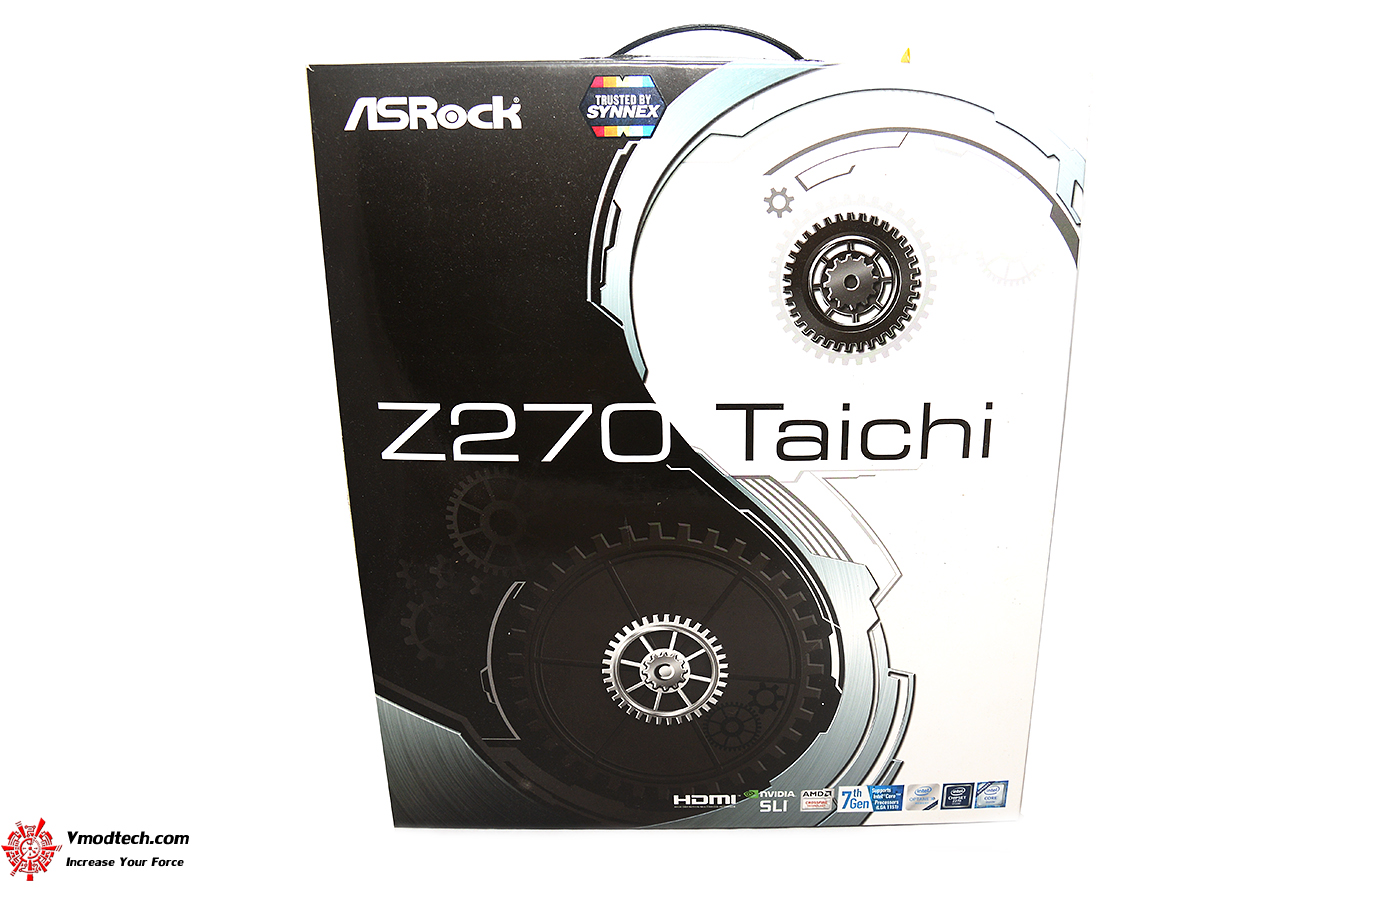 dsc 0756 ASRock Z270 Taichi Review